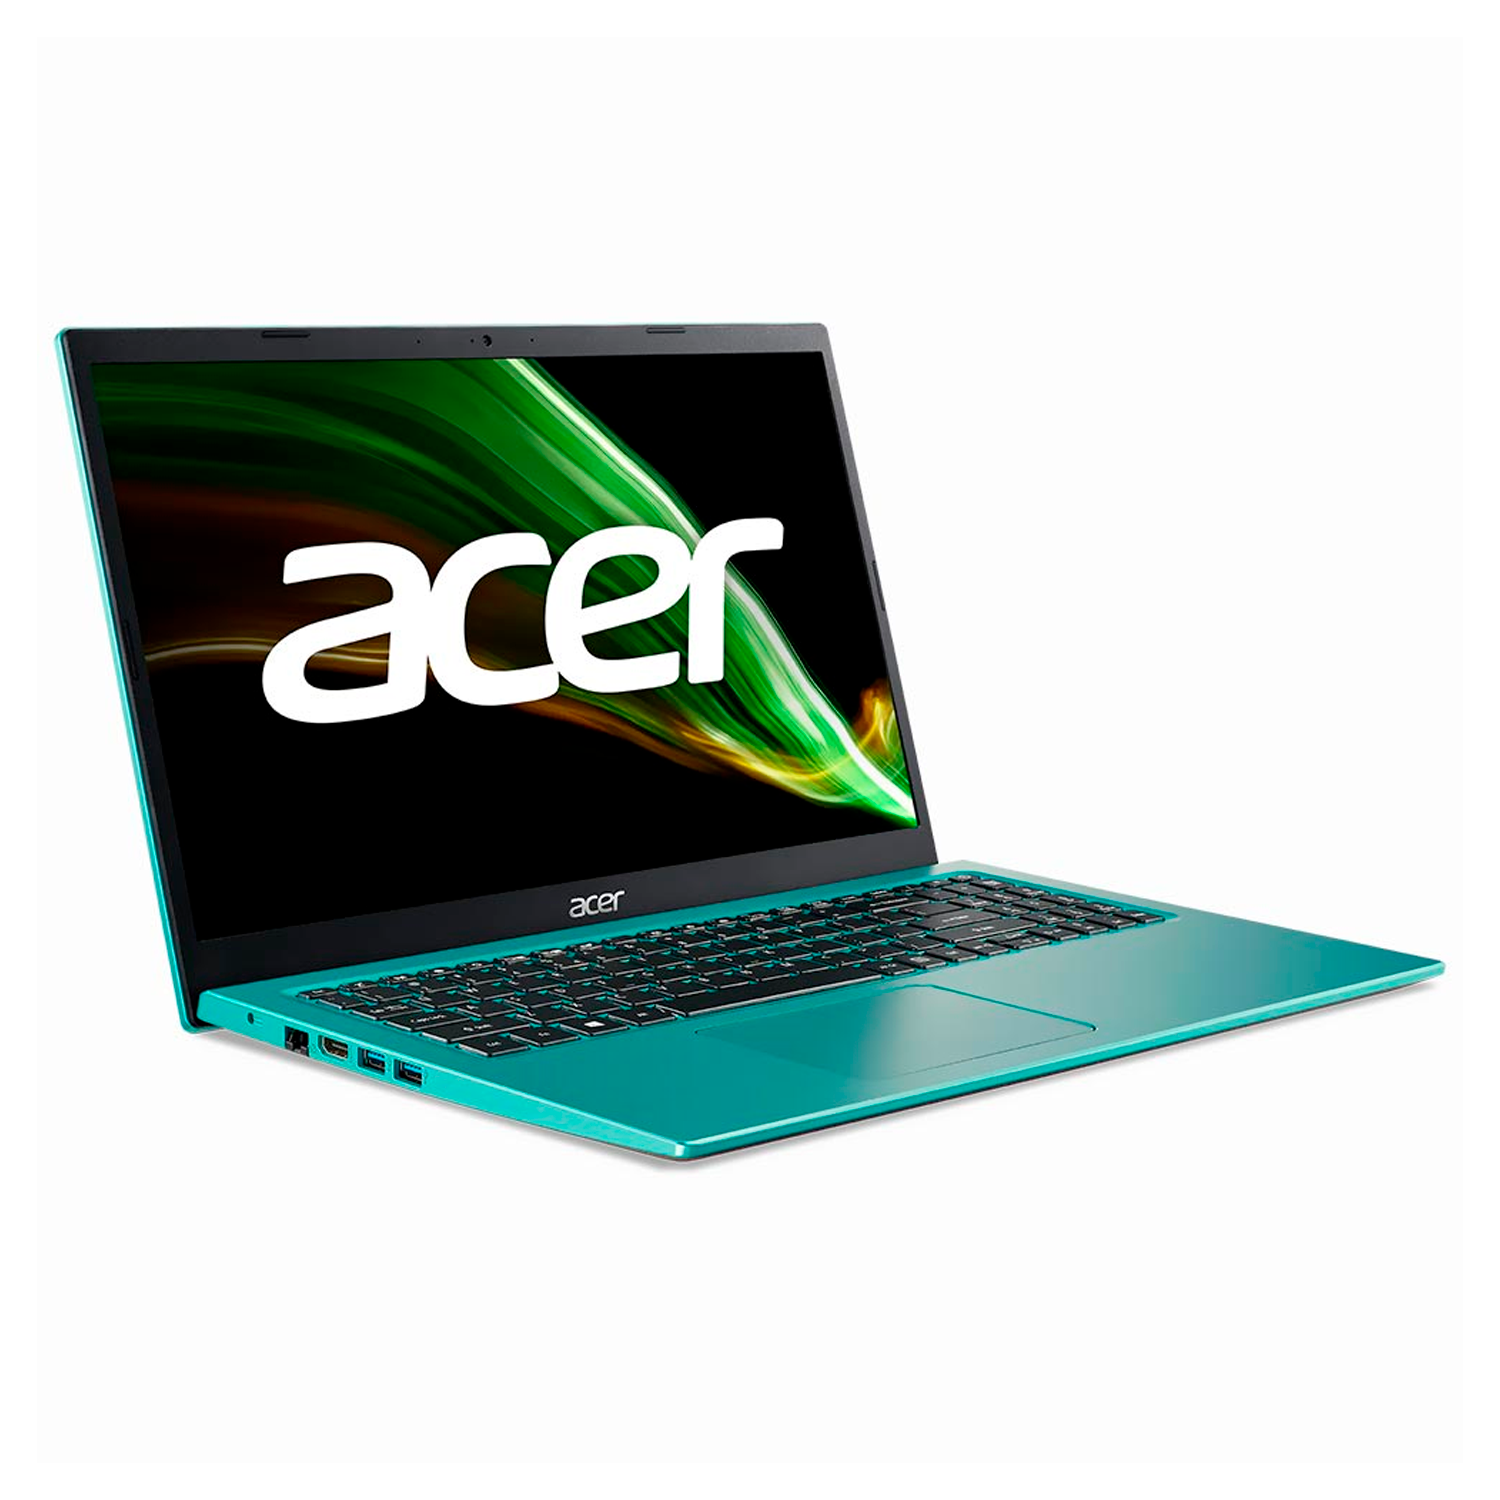 Notebook Acer Aspire 3 A315-58-34DA 15.6" Intel Core i3 1115G4 128GB SSD 4GB RAM - Blue Teal